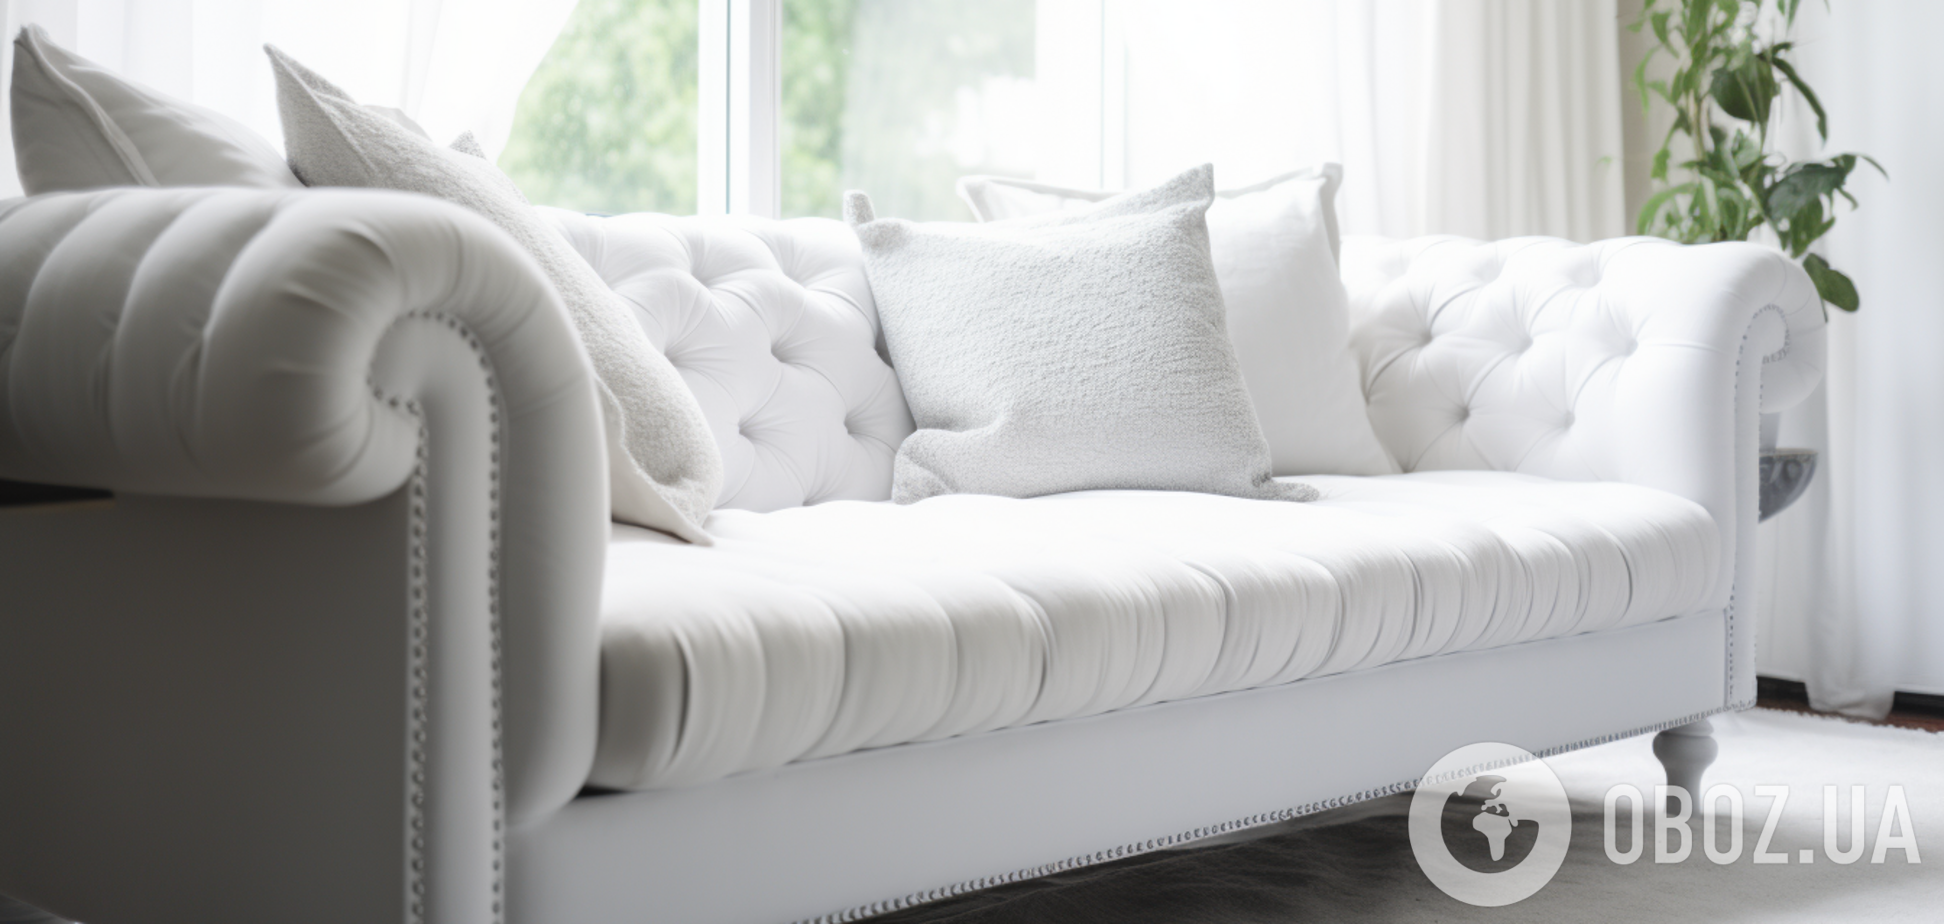 Завдання з зірочкою: як почистити білий диван до стану нового